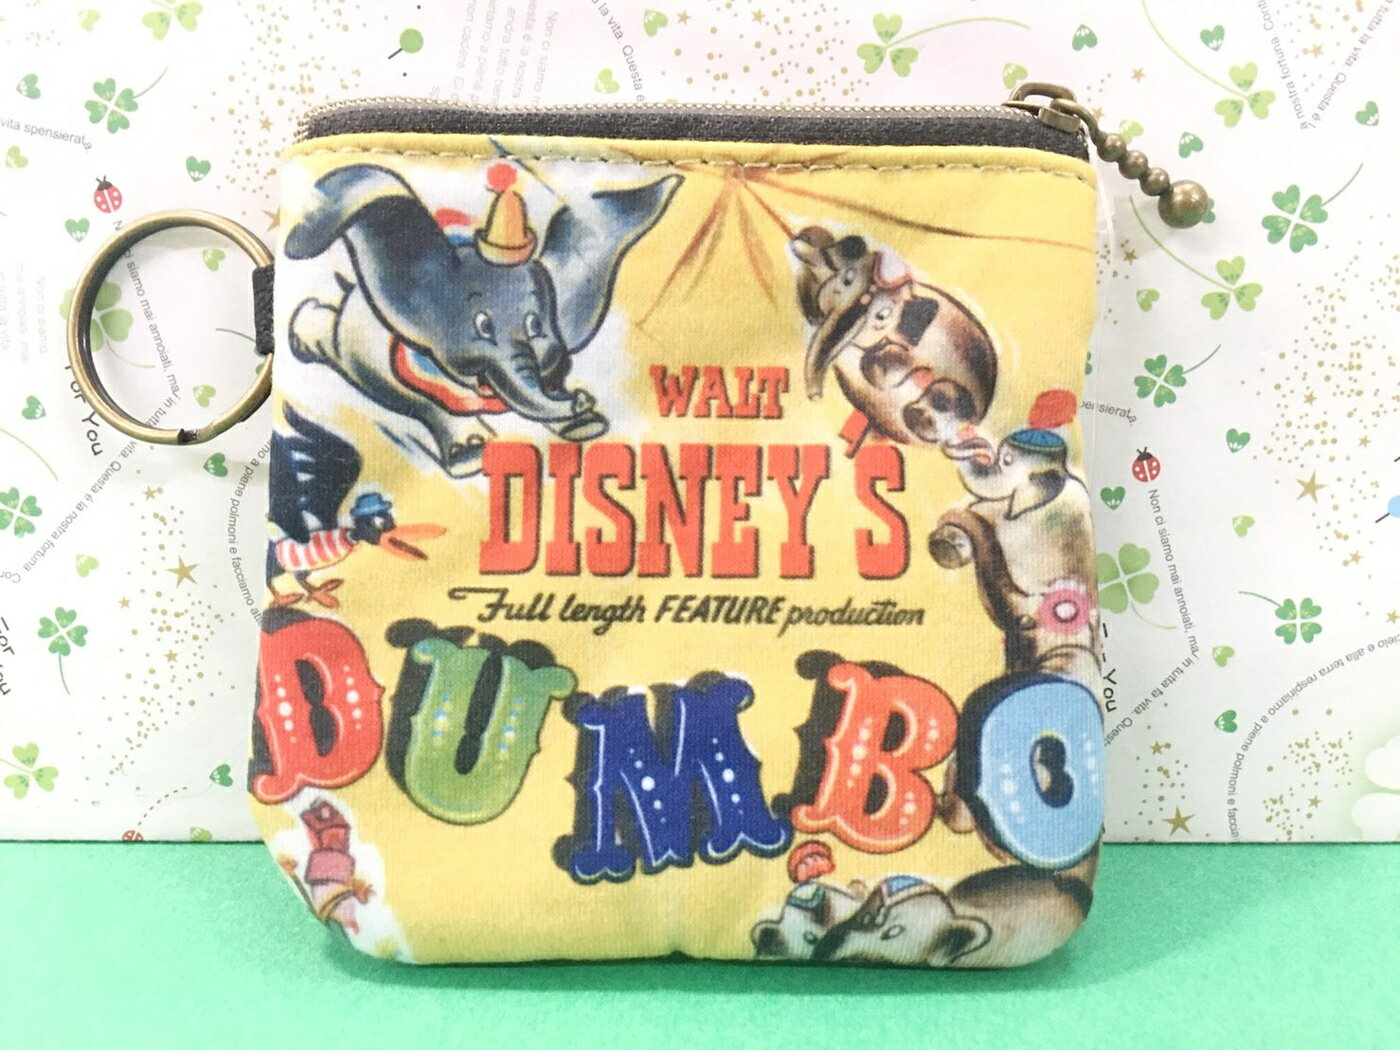 【震撼精品百貨】Dumbo 小飛象 迪士尼小飛象零錢包/收納包-復古樂園#71595 震撼日式精品百貨